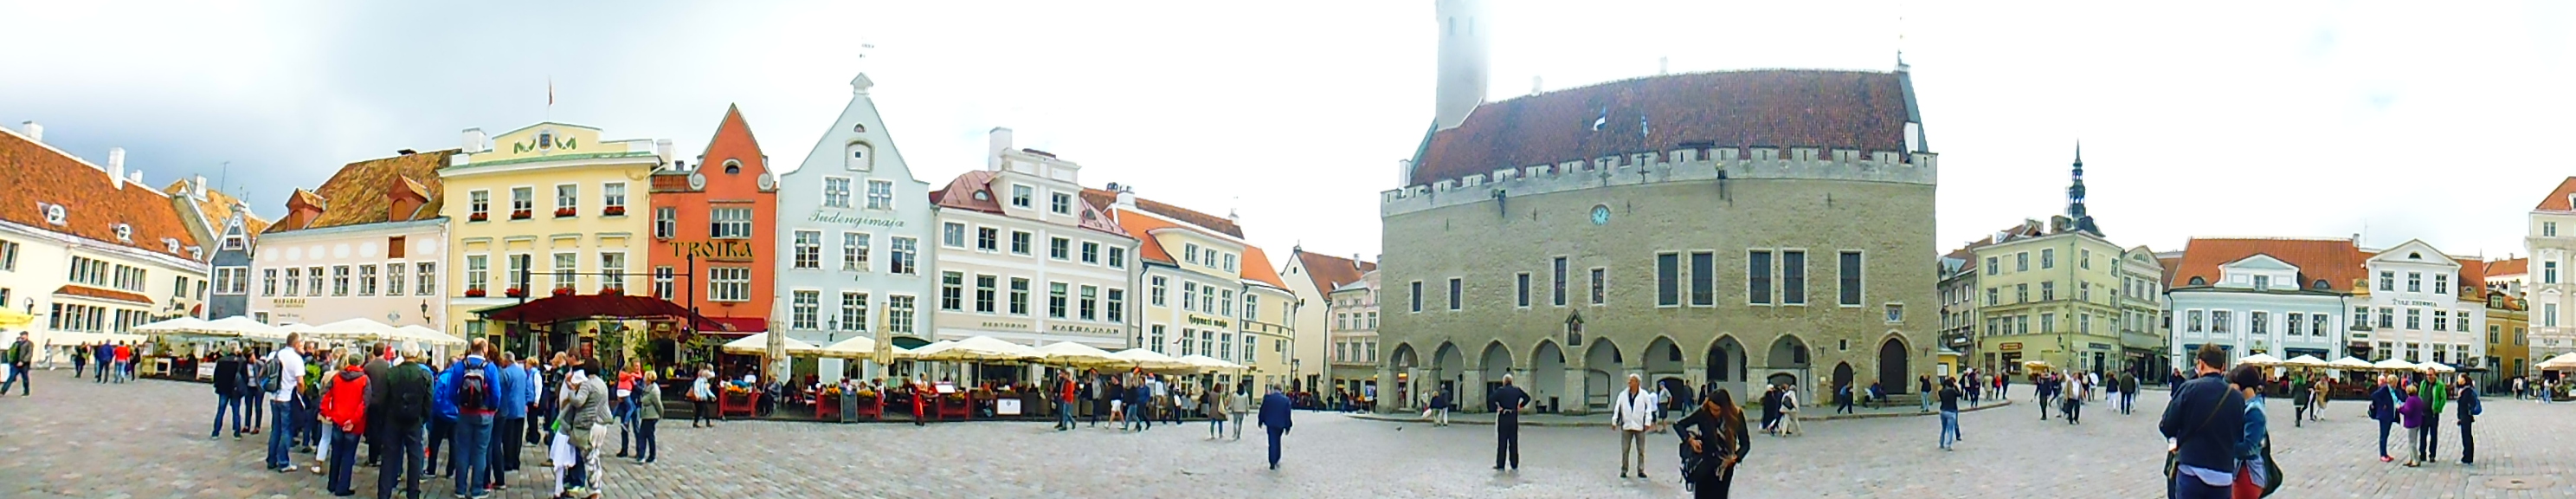 Raekoja Platz (Plaza del Ayuntamiento) (Tallinn) (Estonia) (@mibaulviajero)